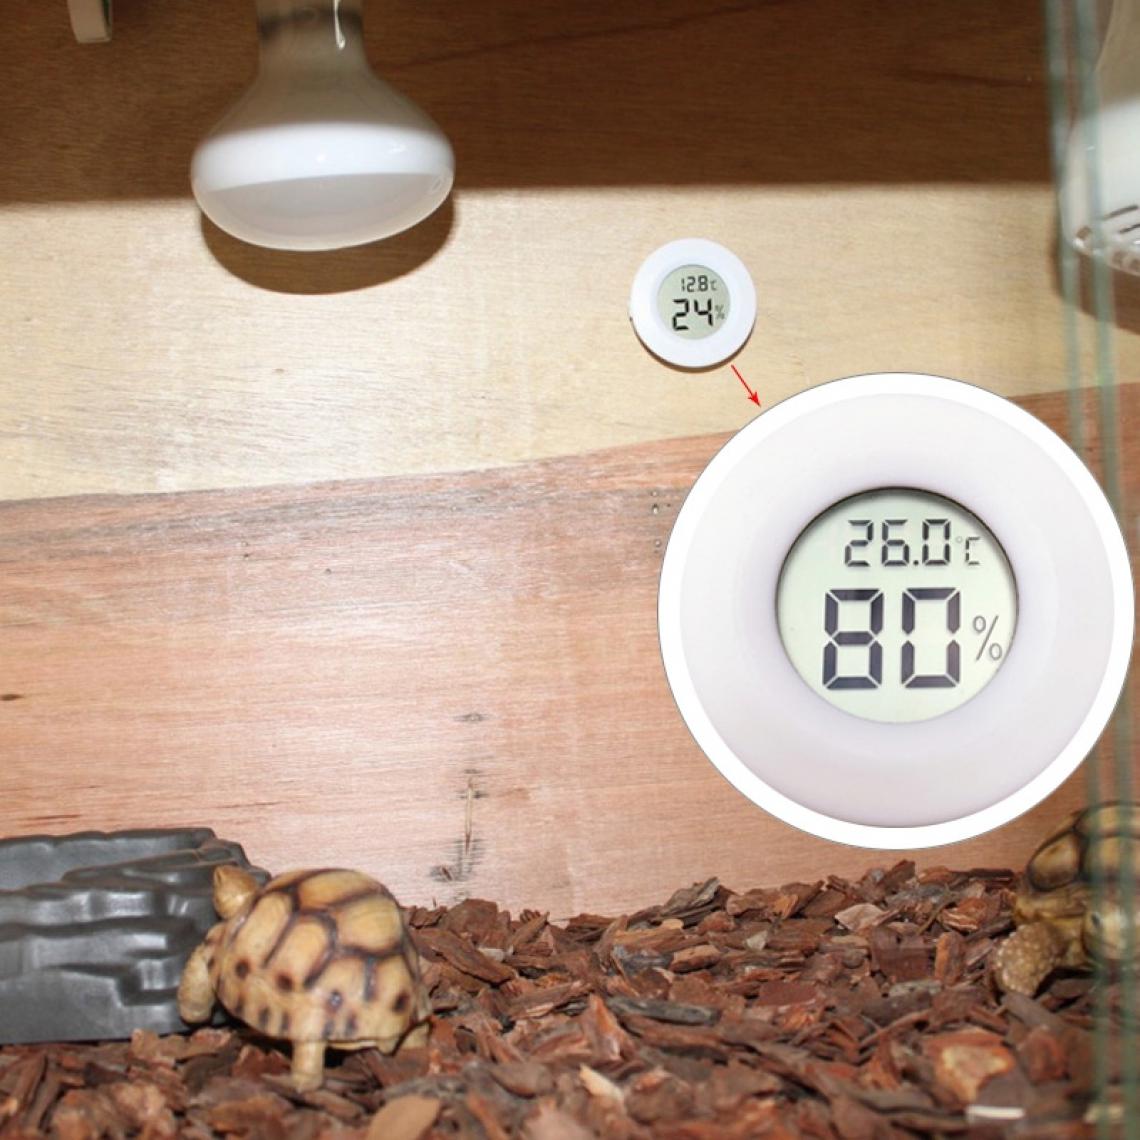 Wewoo - Thermomètre blanc Centigrade & hygromètre en forme de reptile ronde numérique avec écran - Appareils de mesure